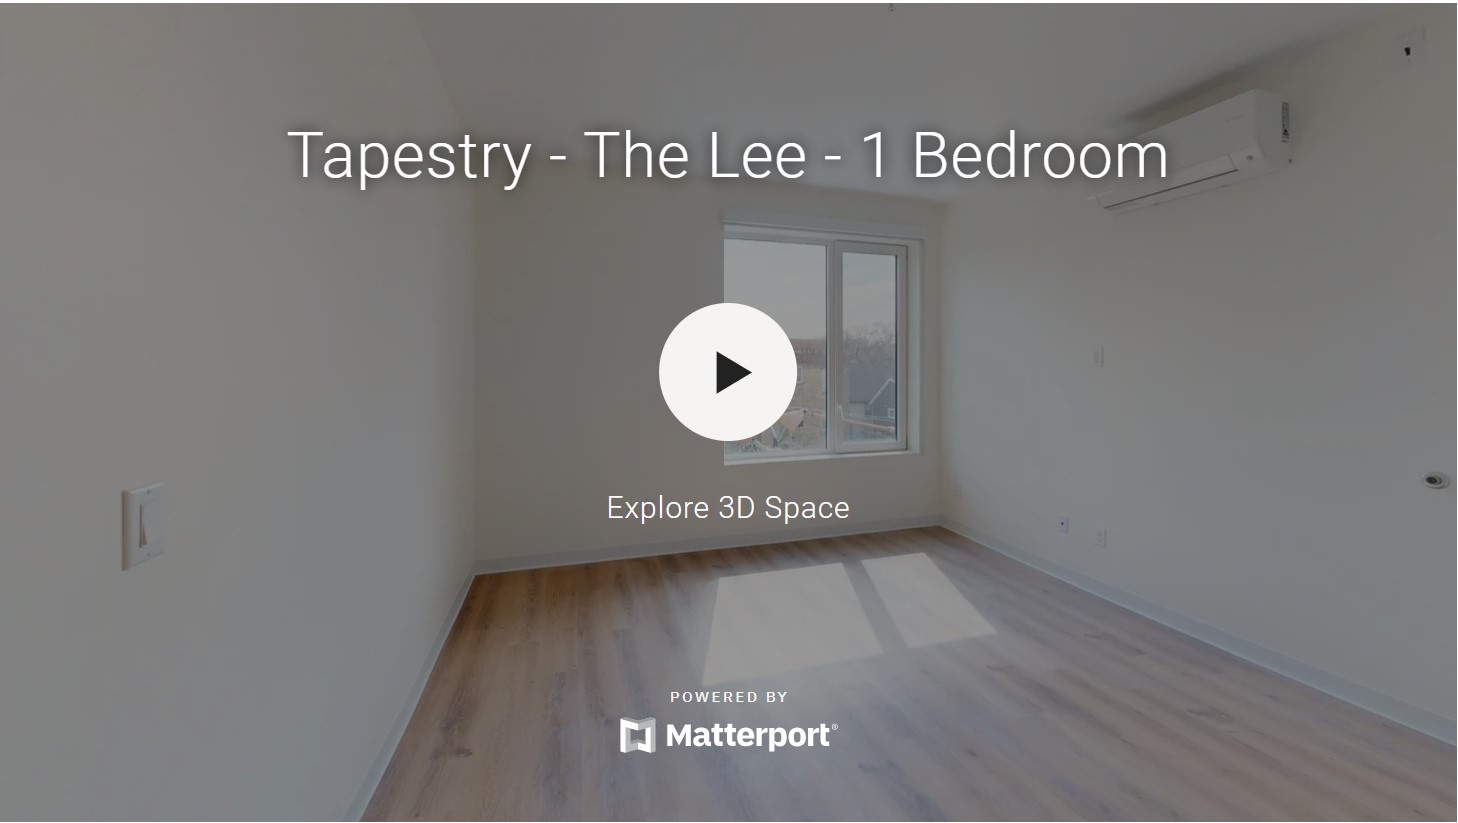 The Lee - 1 Bedroom